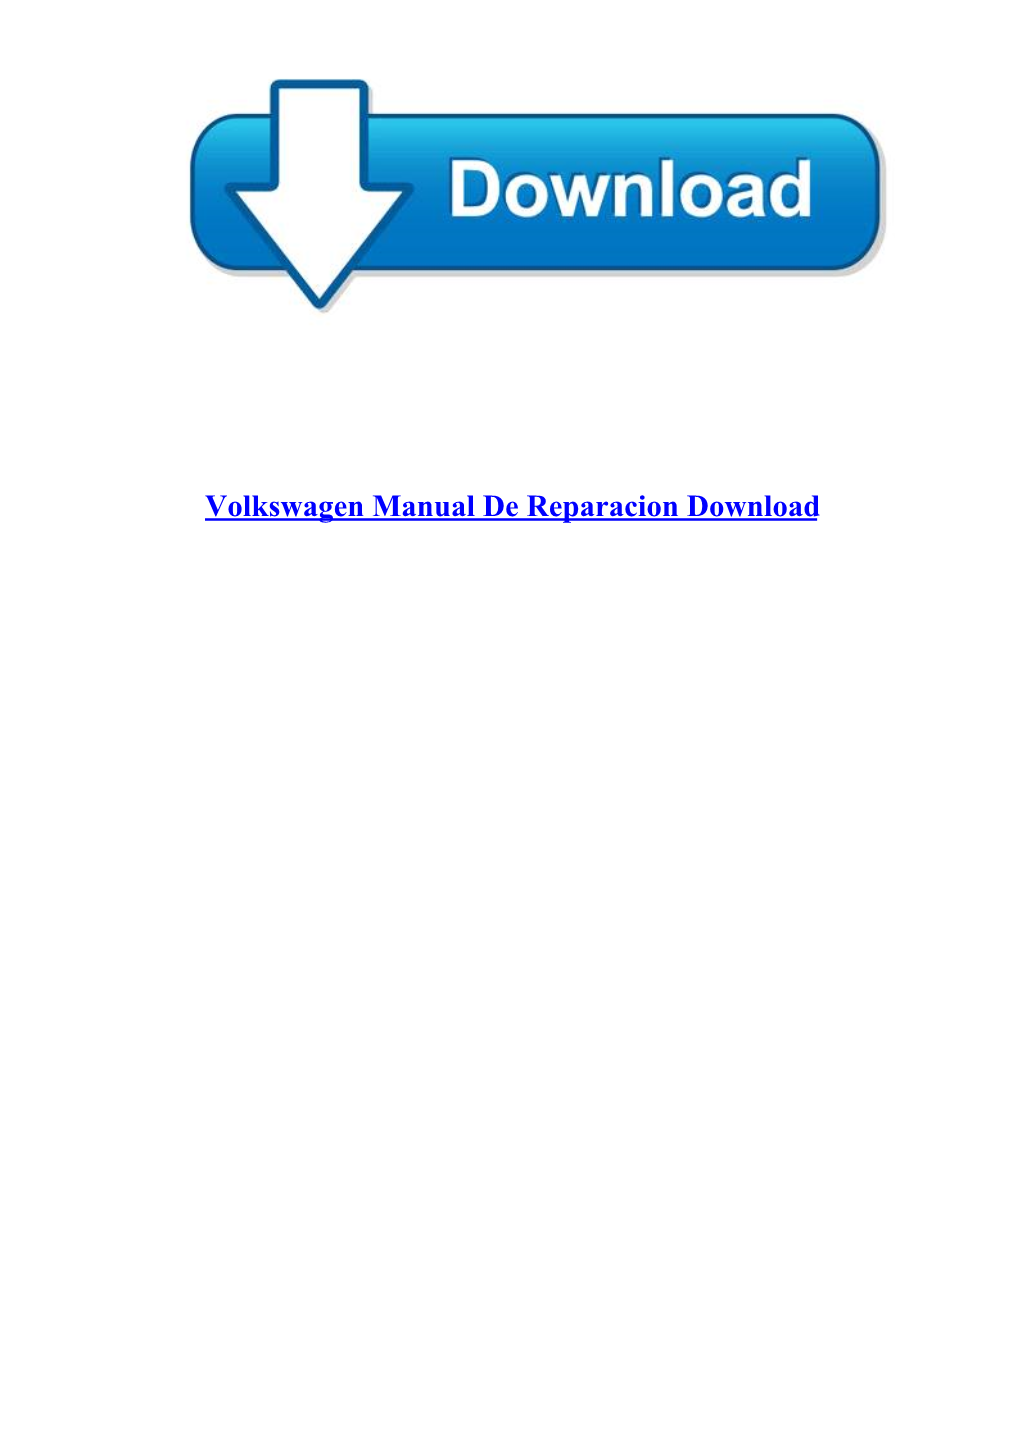 Volkswagen Manual De Reparacion Download Volkswagen Manual De Reparacion